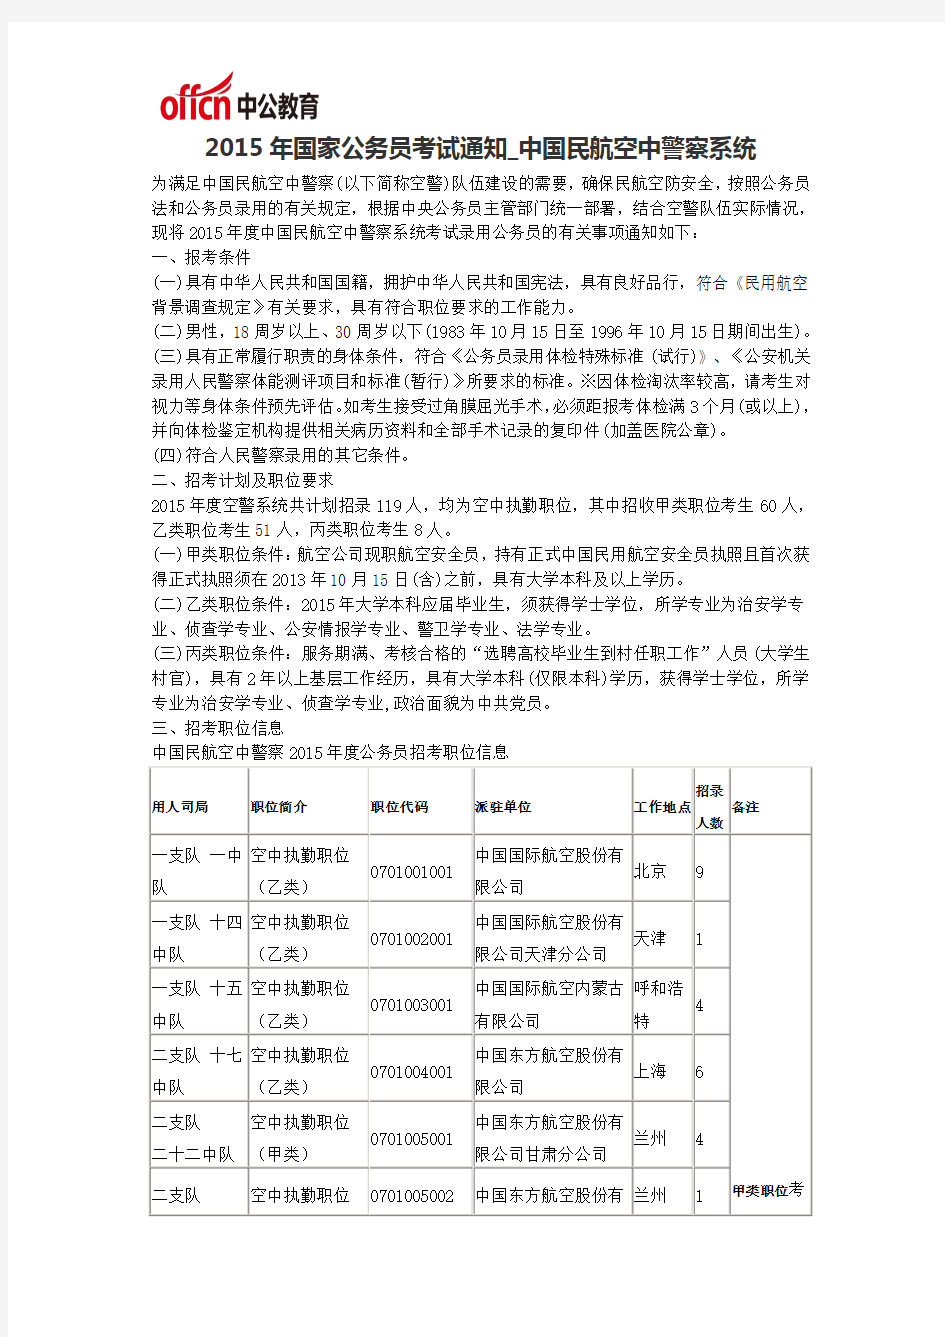 2015年国家公务员考试通知_中国民航空中警察系统